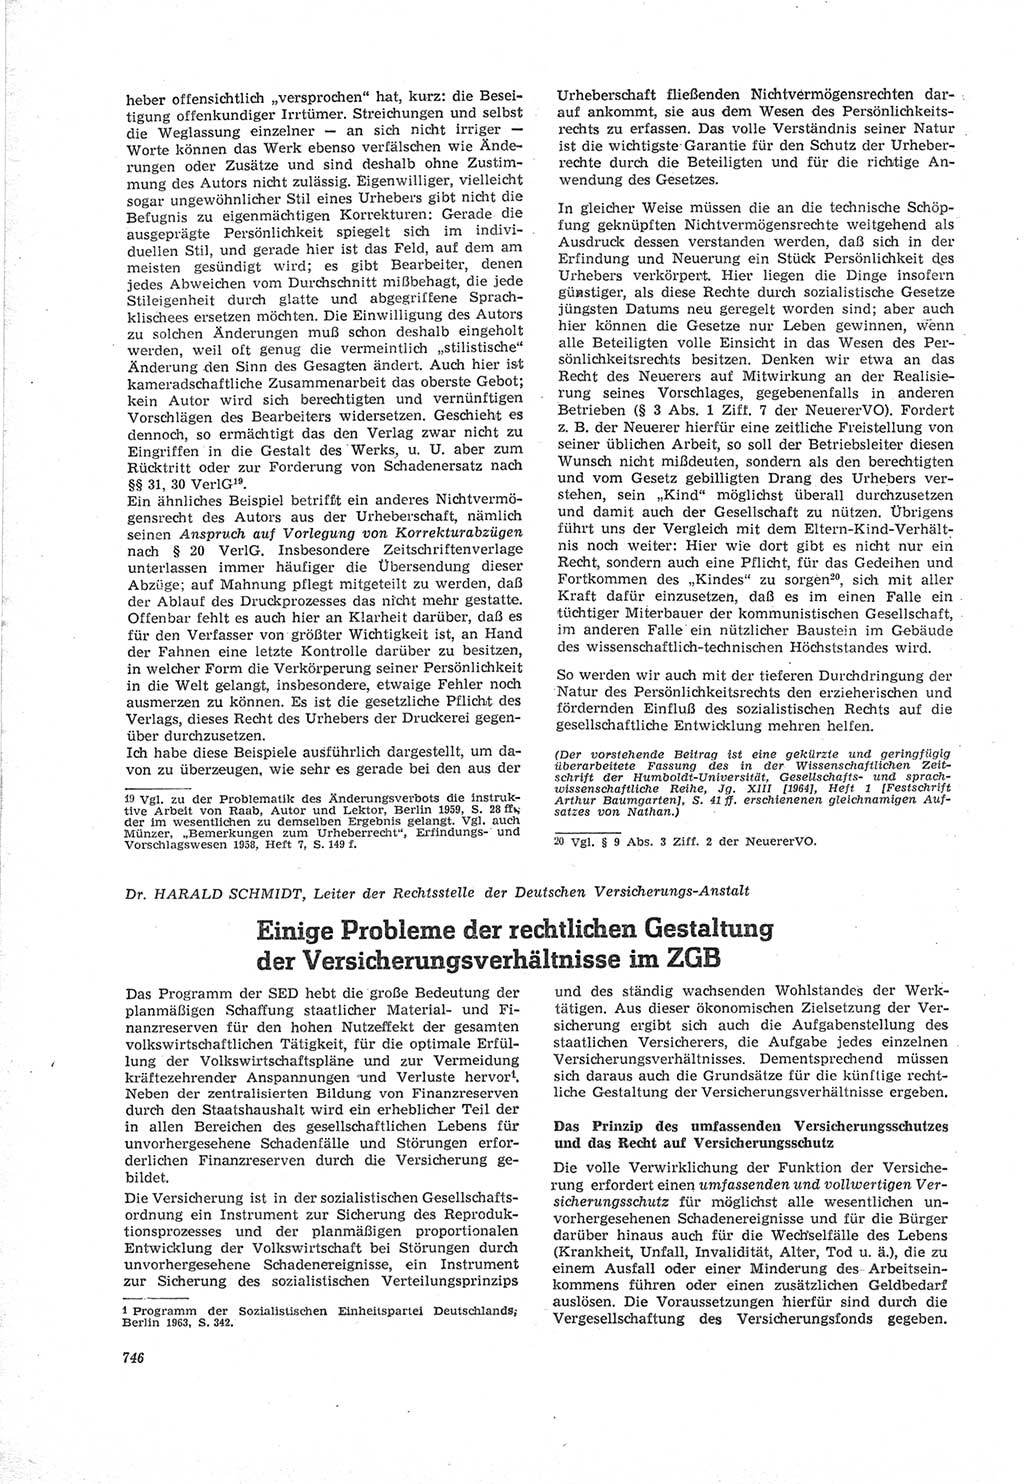 Neue Justiz (NJ), Zeitschrift für Recht und Rechtswissenschaft [Deutsche Demokratische Republik (DDR)], 18. Jahrgang 1964, Seite 746 (NJ DDR 1964, S. 746)